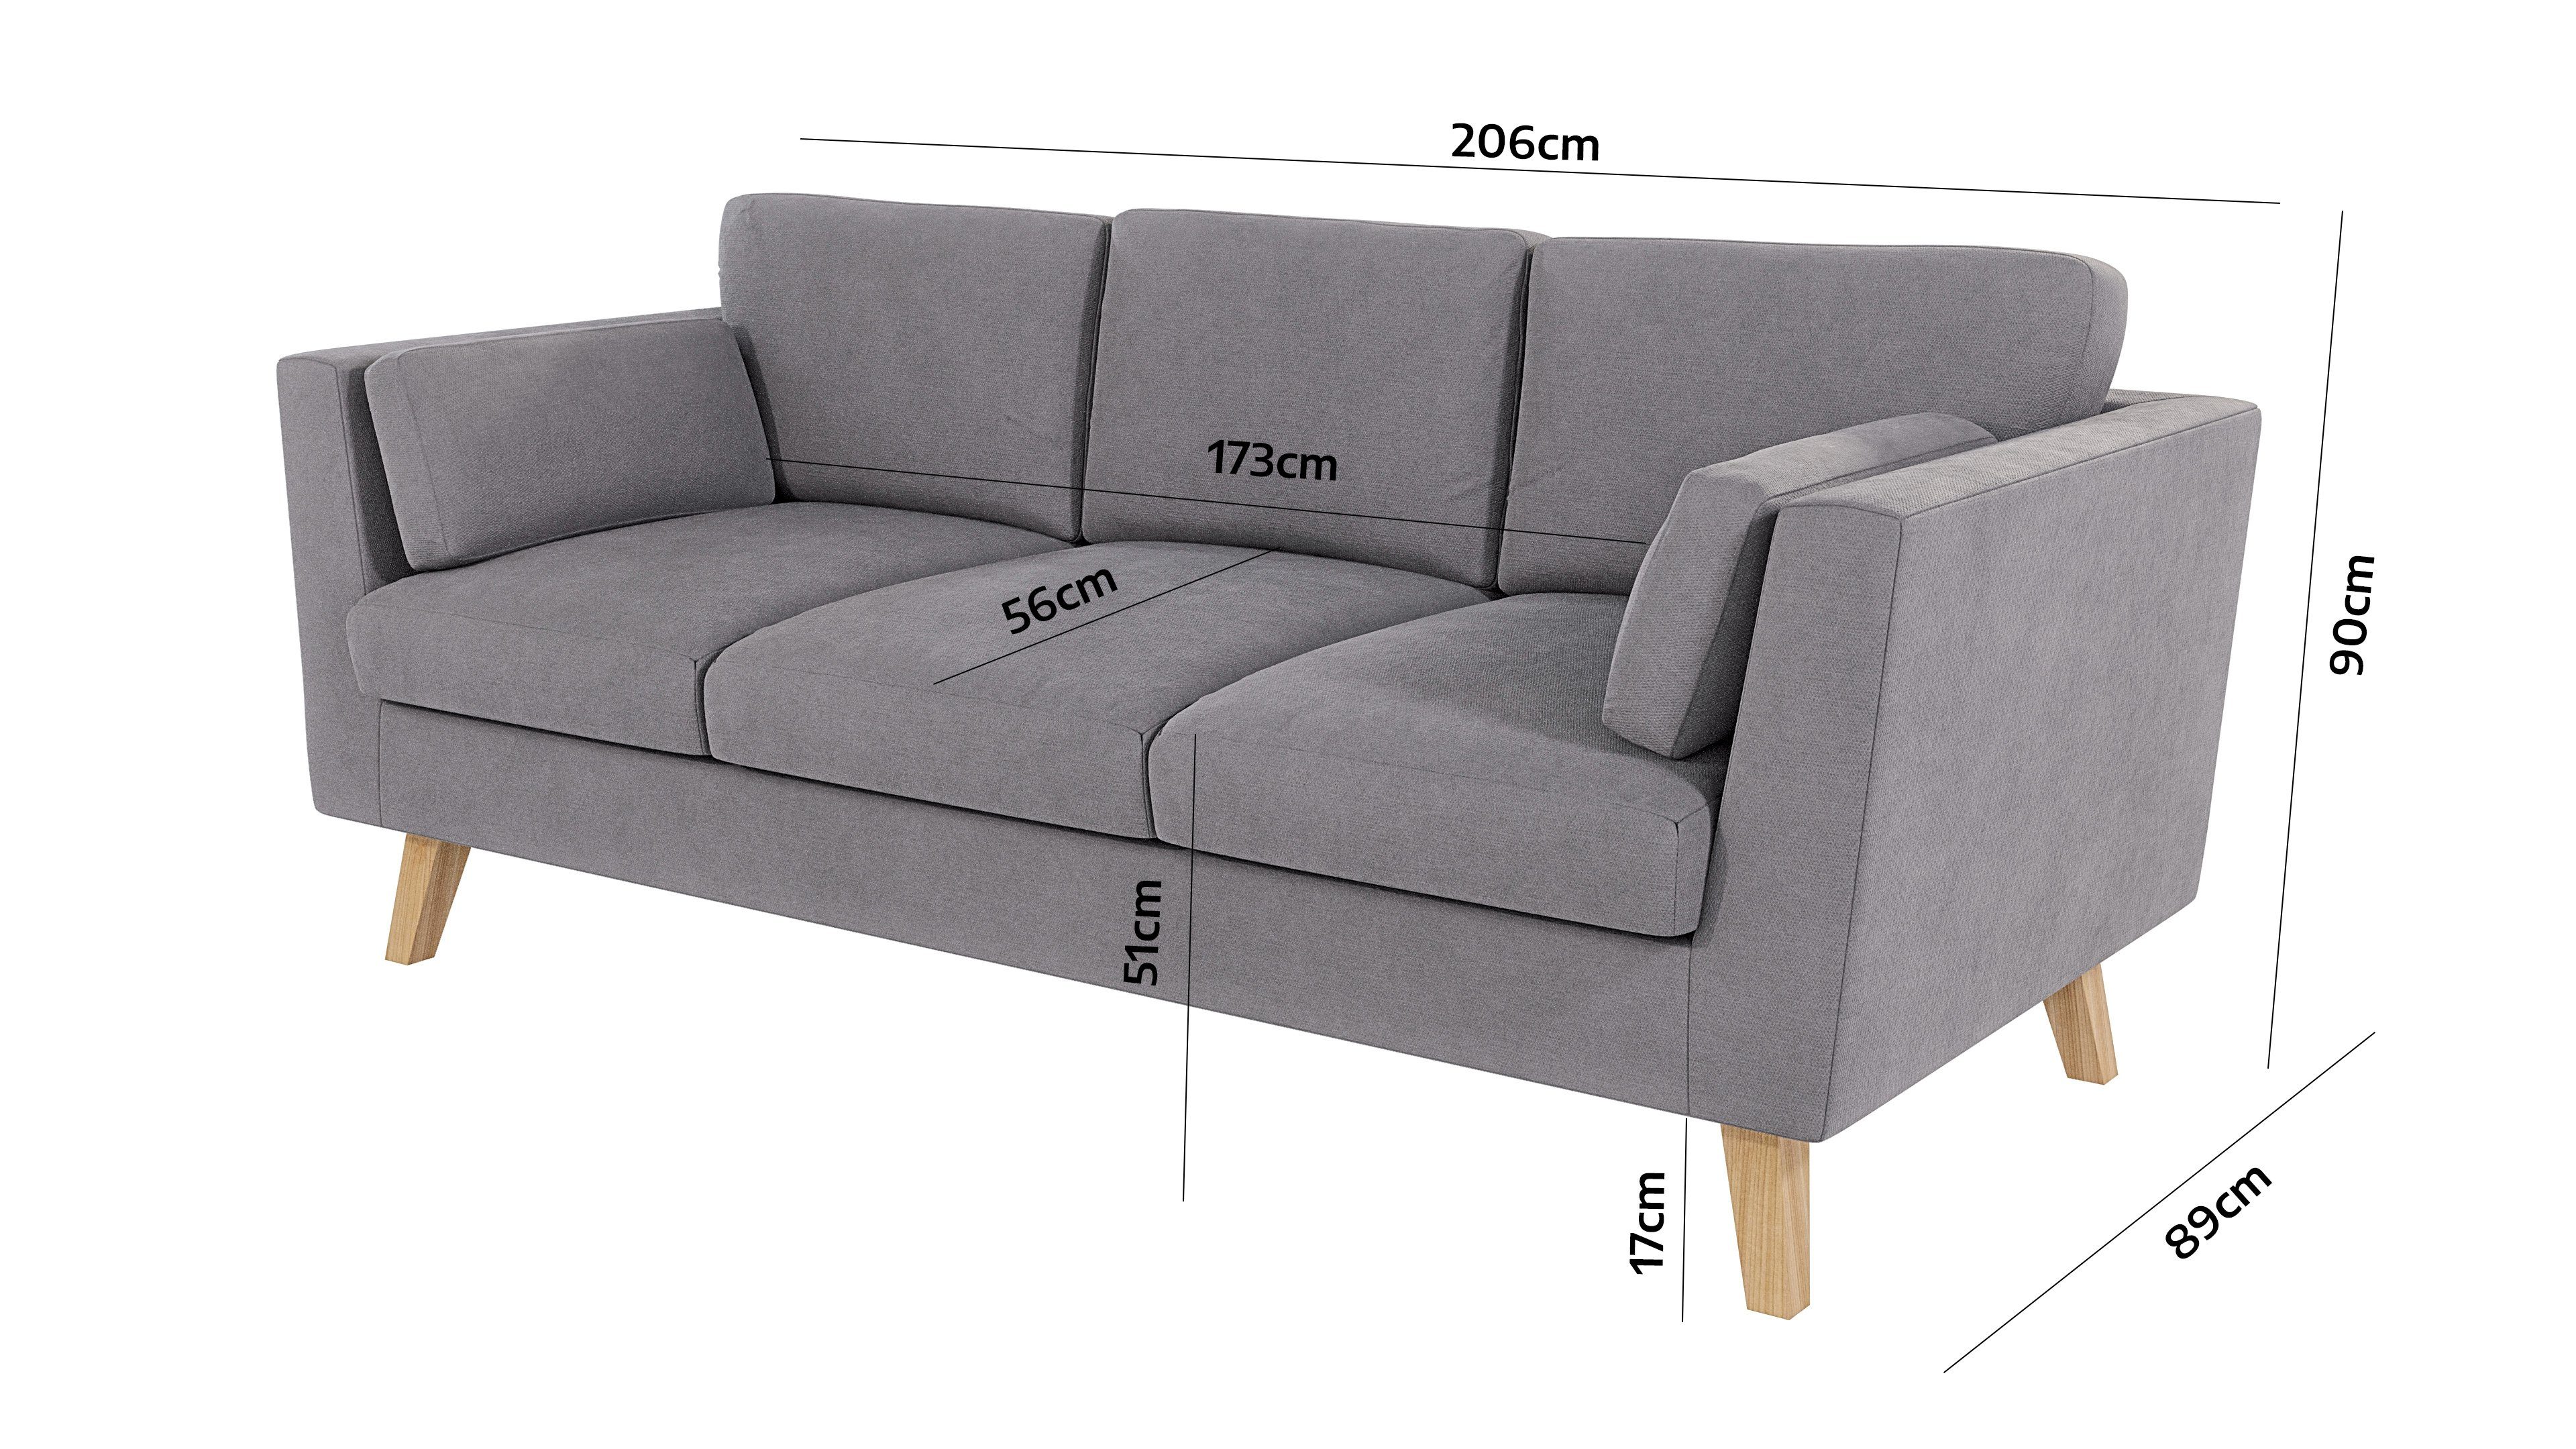 Angeles mit Khaki Sofa - Braun S-Style 3-Sitzer Wellenfederung Design, im skandinavischen Möbel